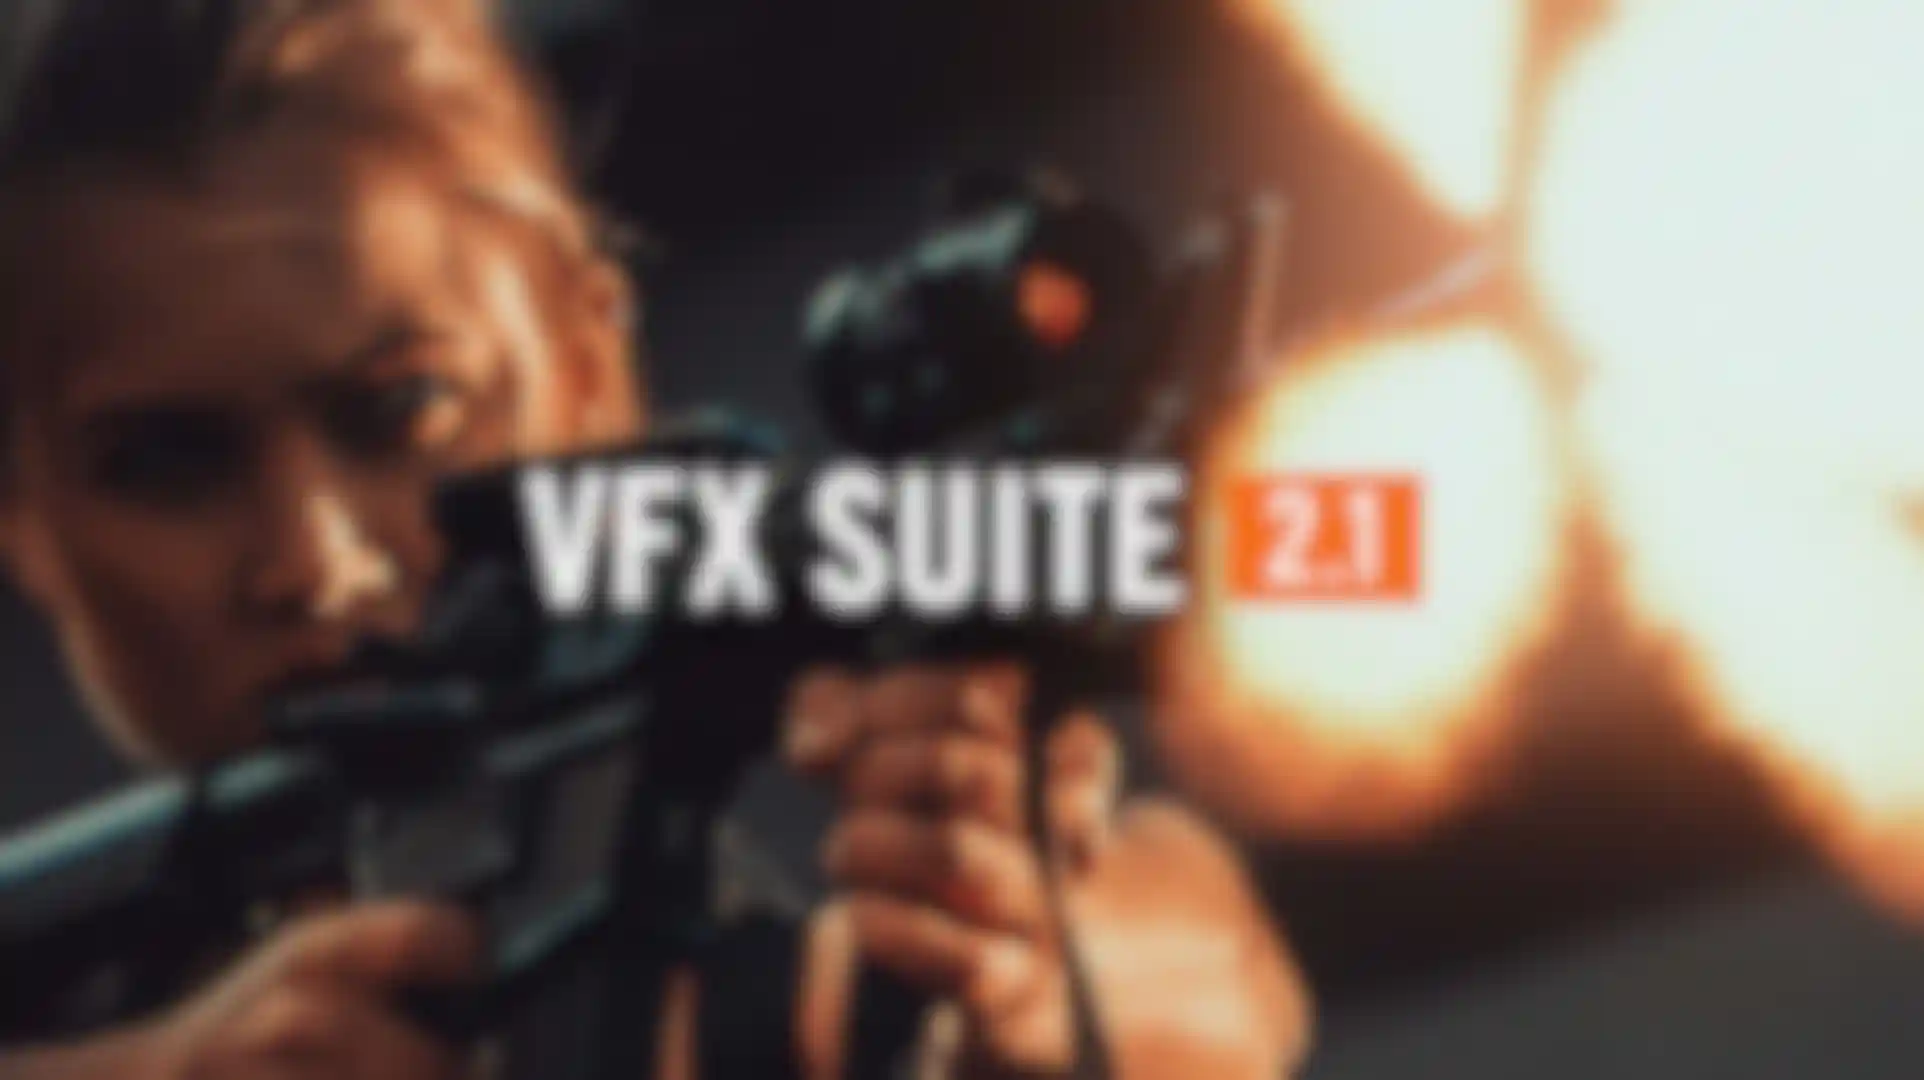 VFX Suite 2.1 jetzt verfügbar image